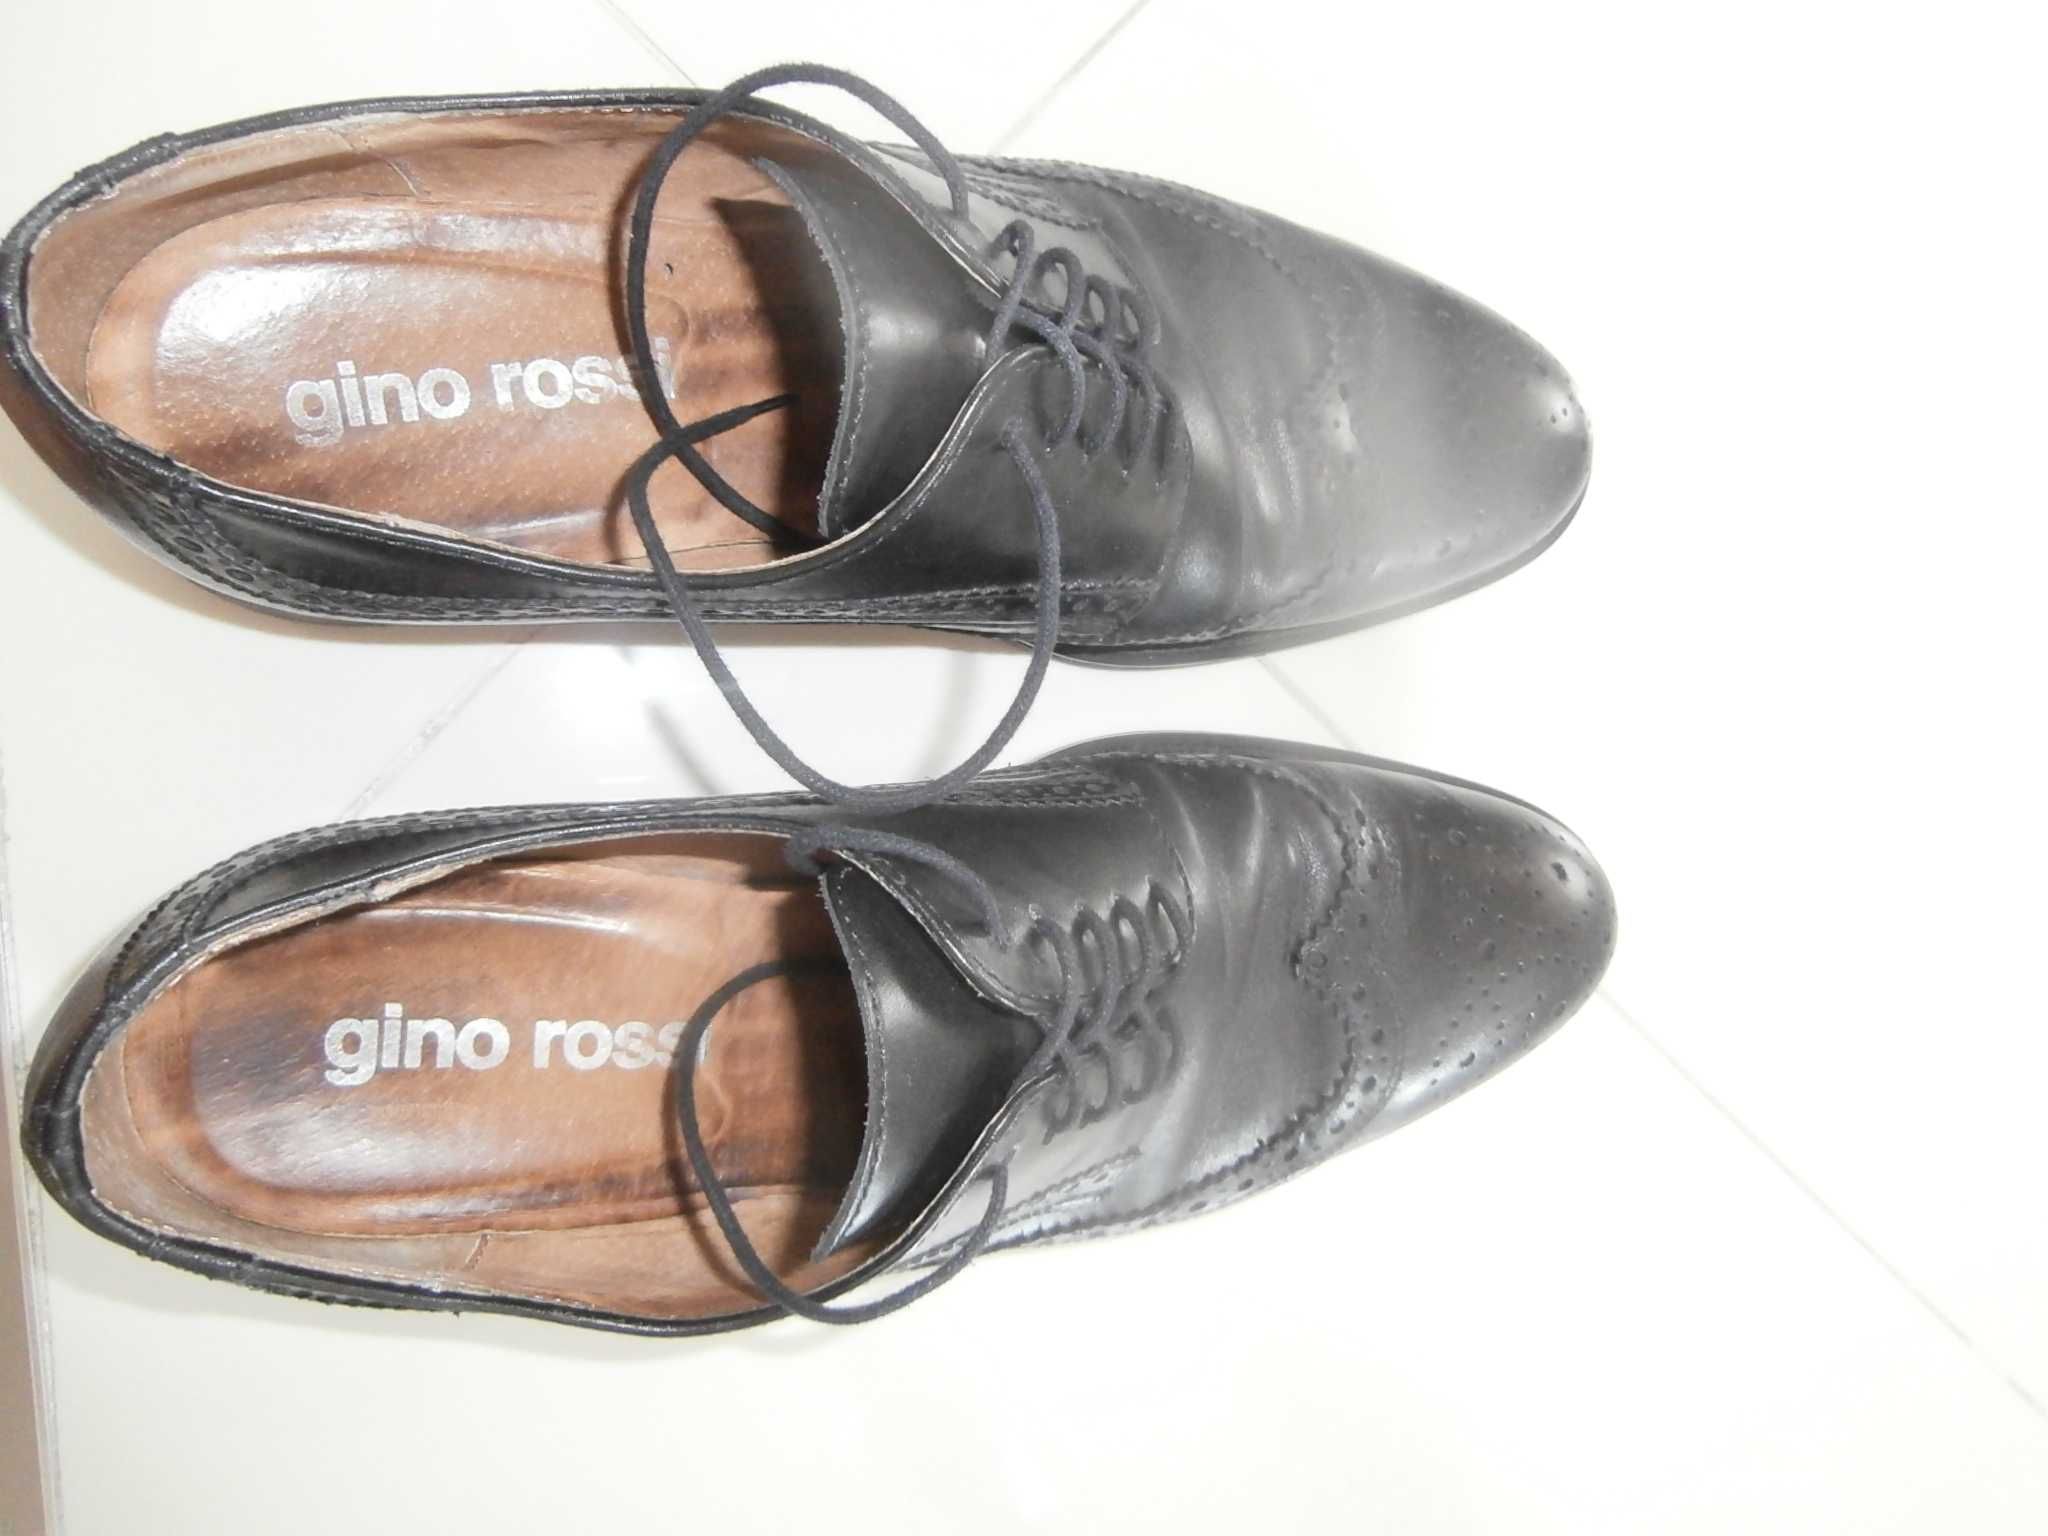 Gino Rossi buty męskie eleganckie stan bdb roz.40